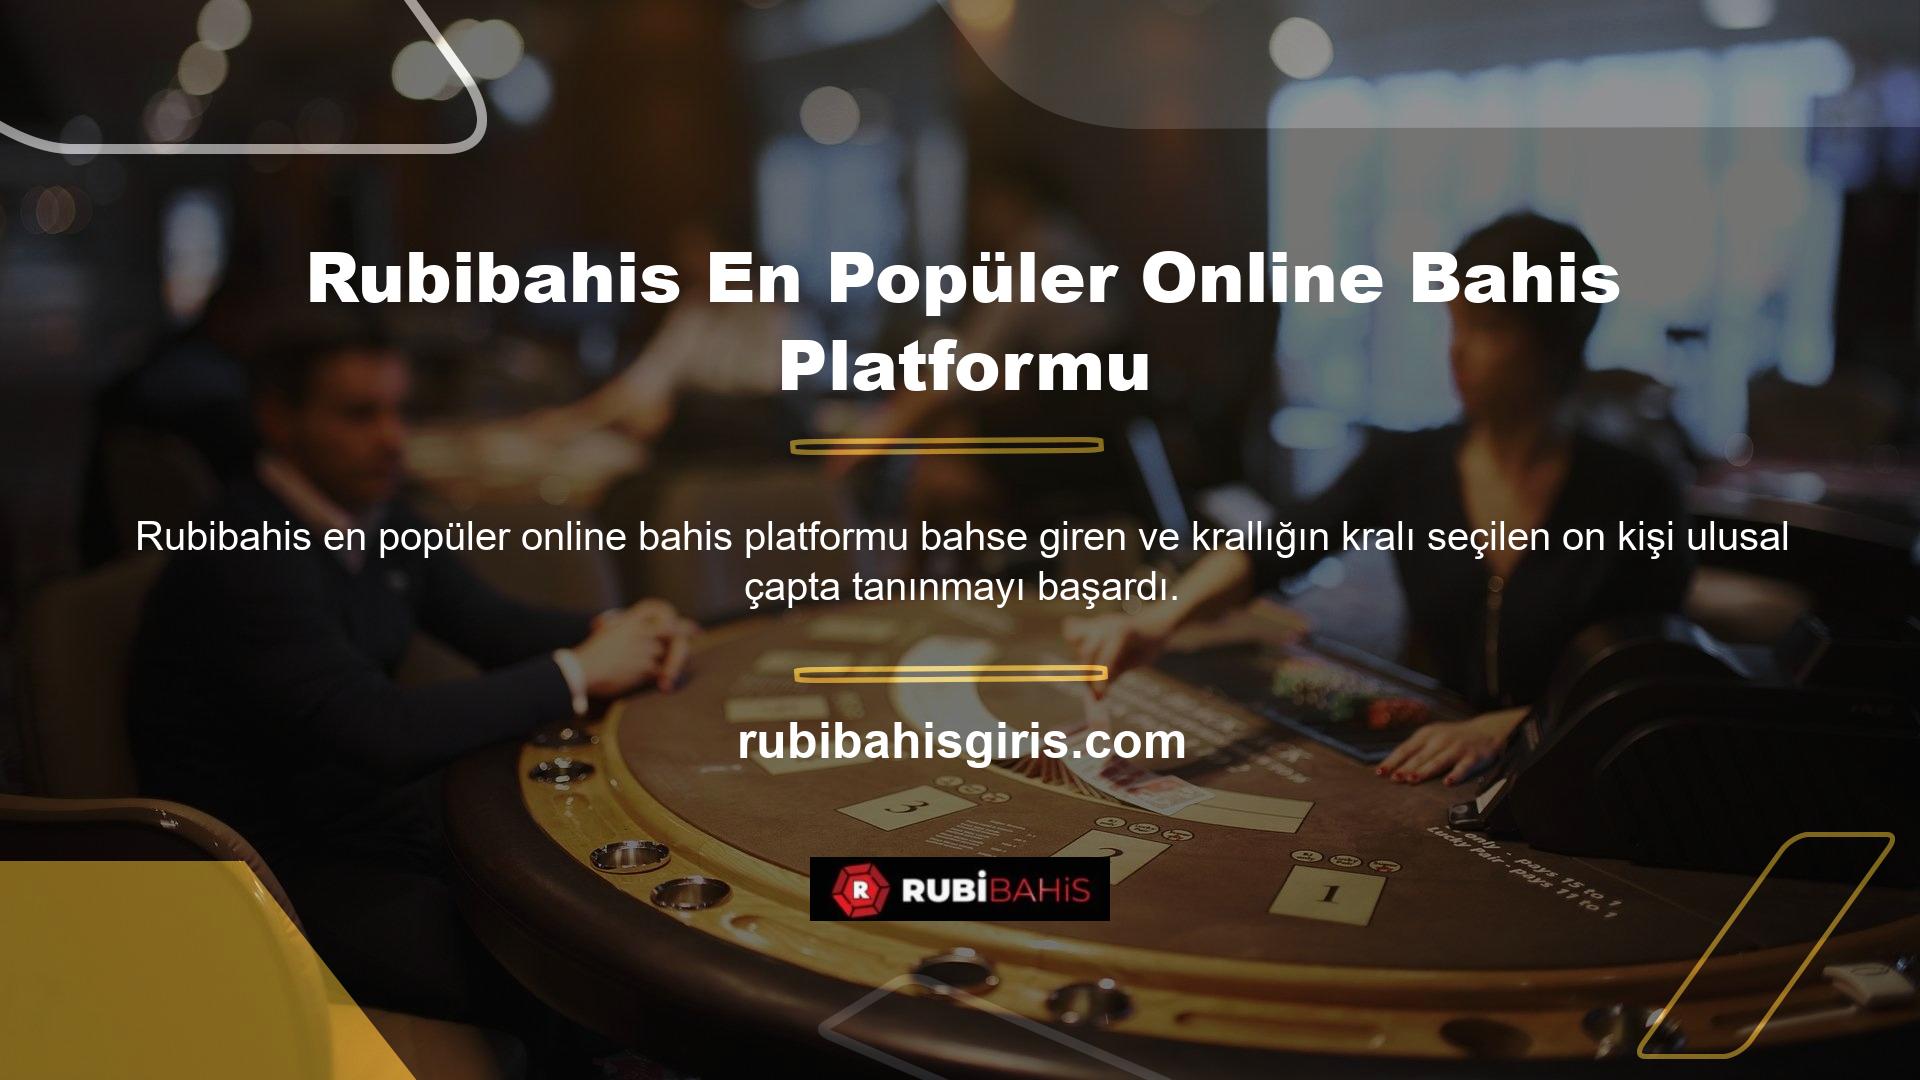 Çevrimiçi casino platformunda birinci sınıf hizmetin, yüksek etik standartların, şık bir kullanıcı ara yüzünün, ileri teknolojinin ve hızlı ve güvenilir bir altyapının yanı sıra sınırsız bahis seçeneklerinin keyfini çıkarabilirsiniz